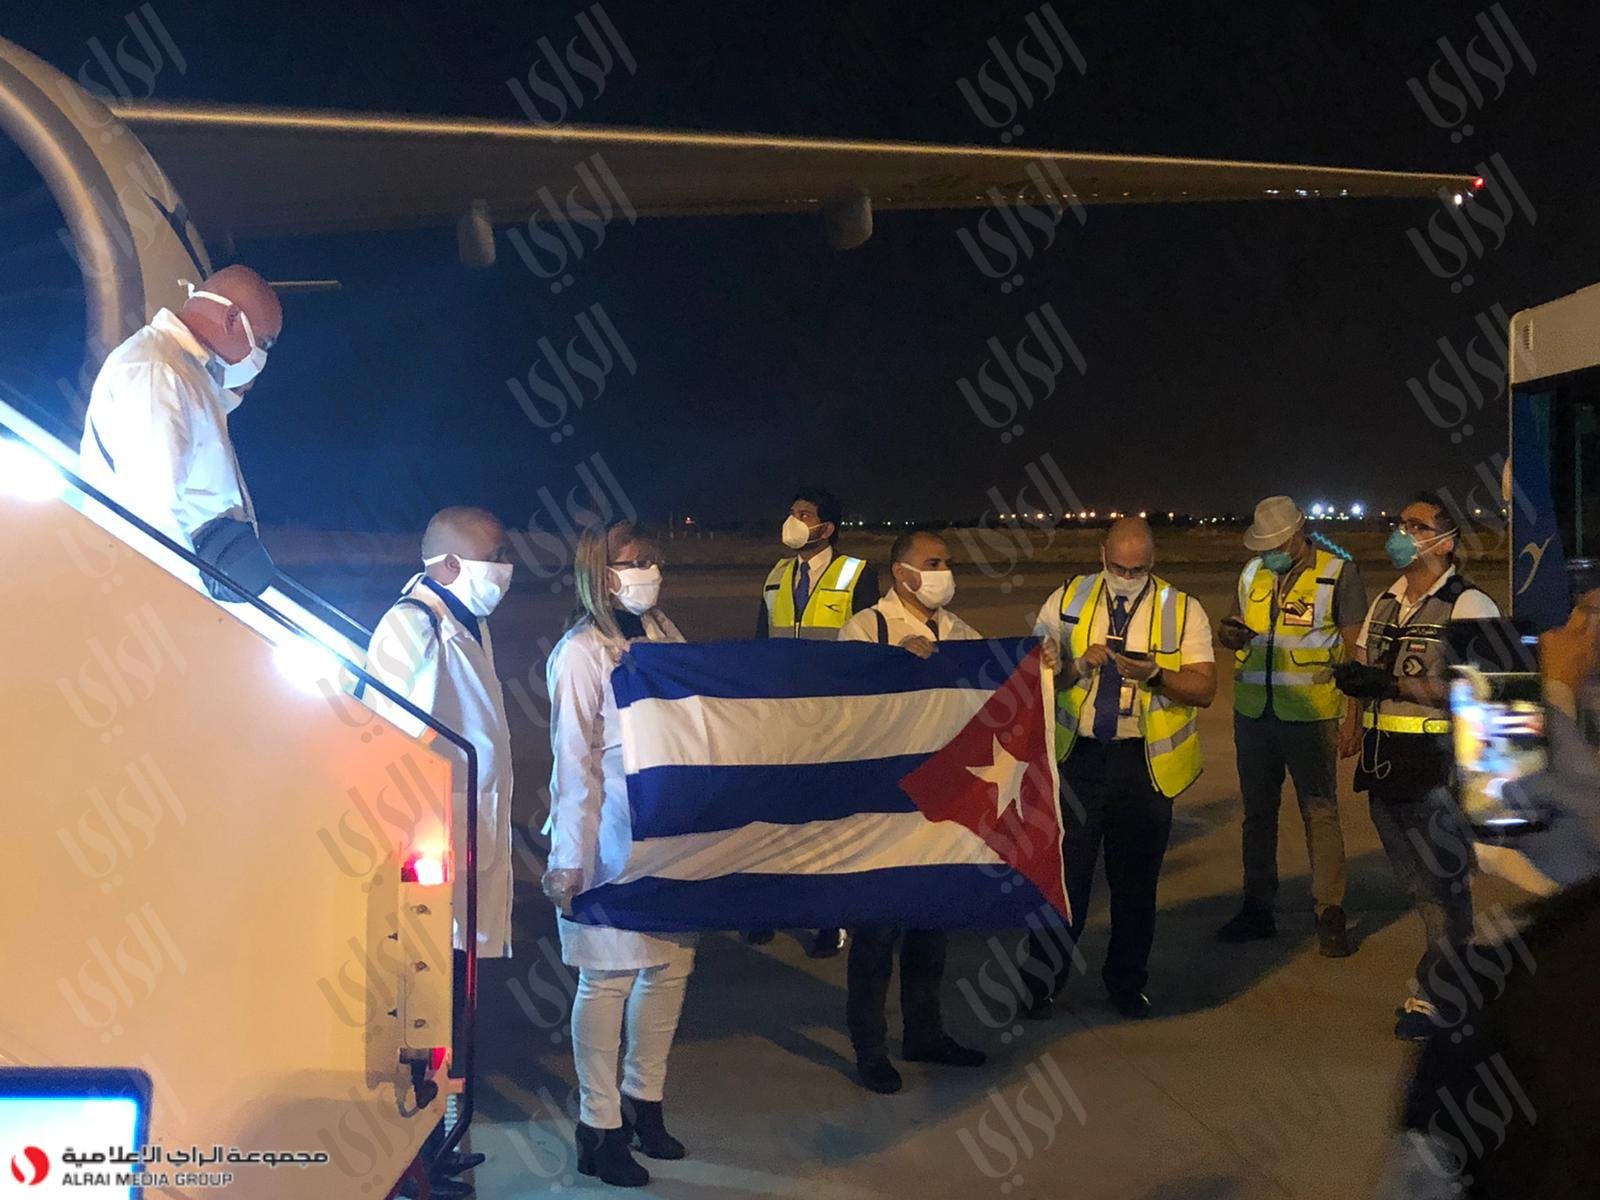 وصول 300 طبيب وممرض من كوبا إلى البلاد